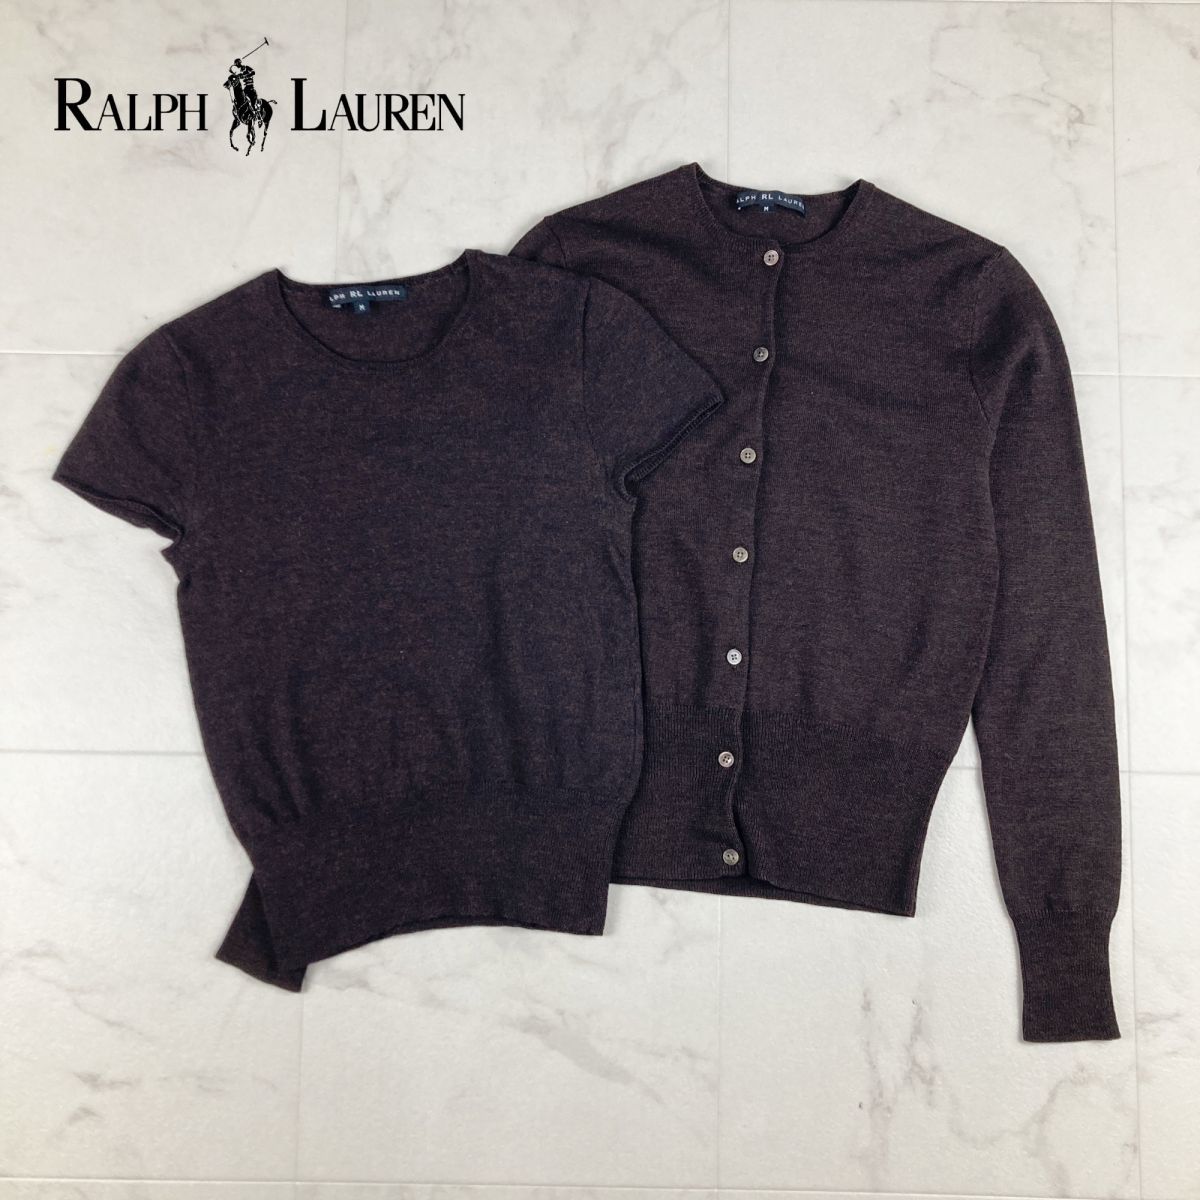  прекрасный товар RALPH RL LAUREN Ralph Lauren ансамбль вязаный шерсть 100% трикотаж с коротким рукавом кардиган женский чай цвет размер M*IC23